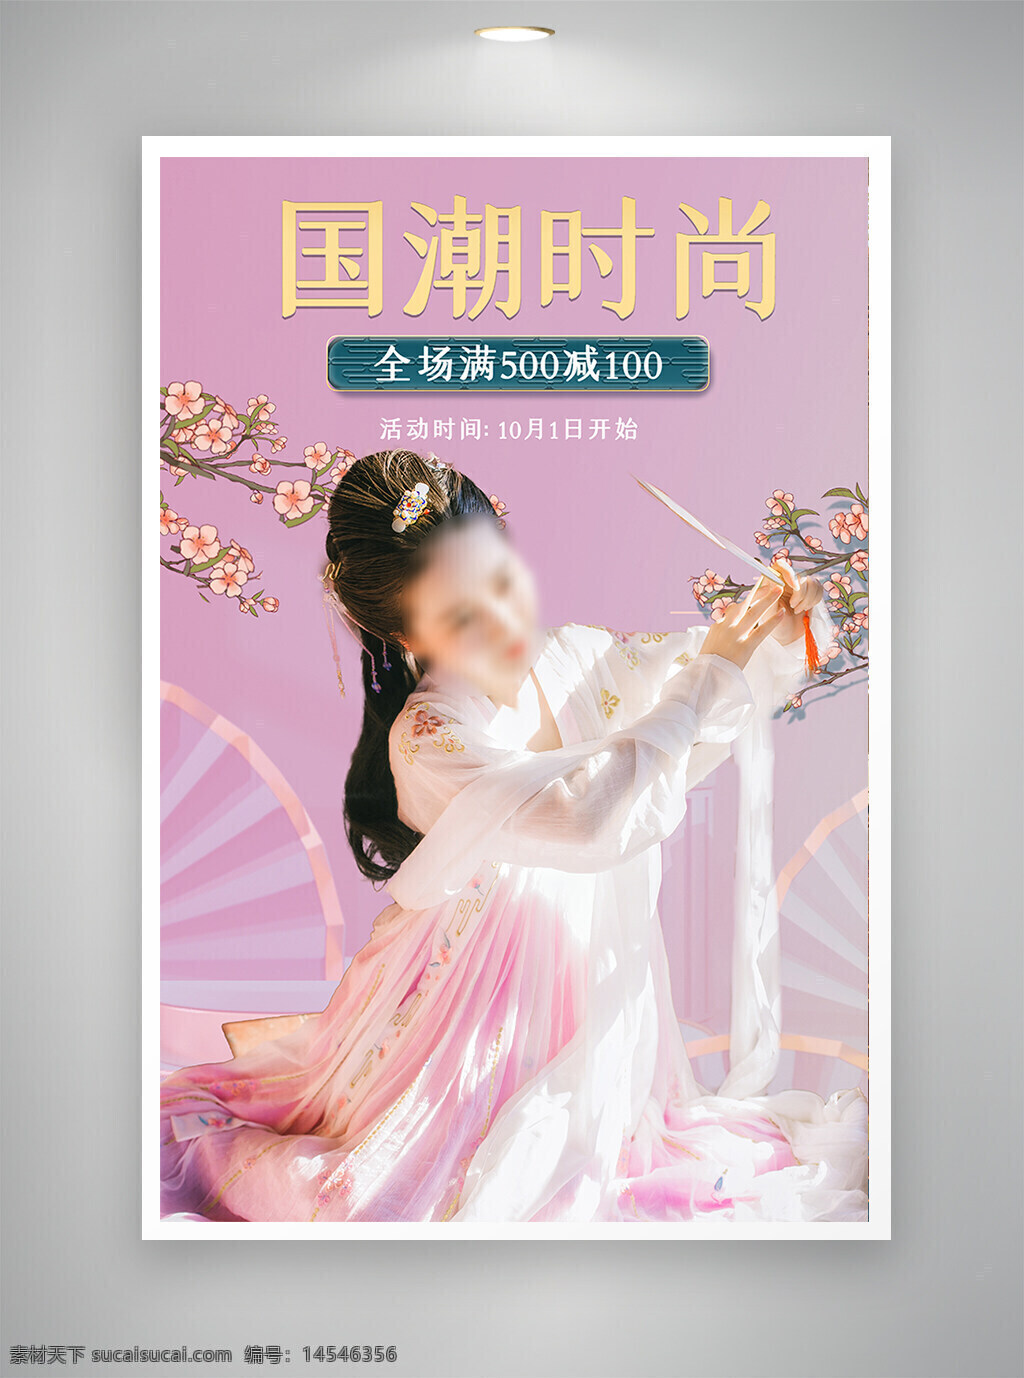 中国风海报 促销海报 节日海报 国潮海报